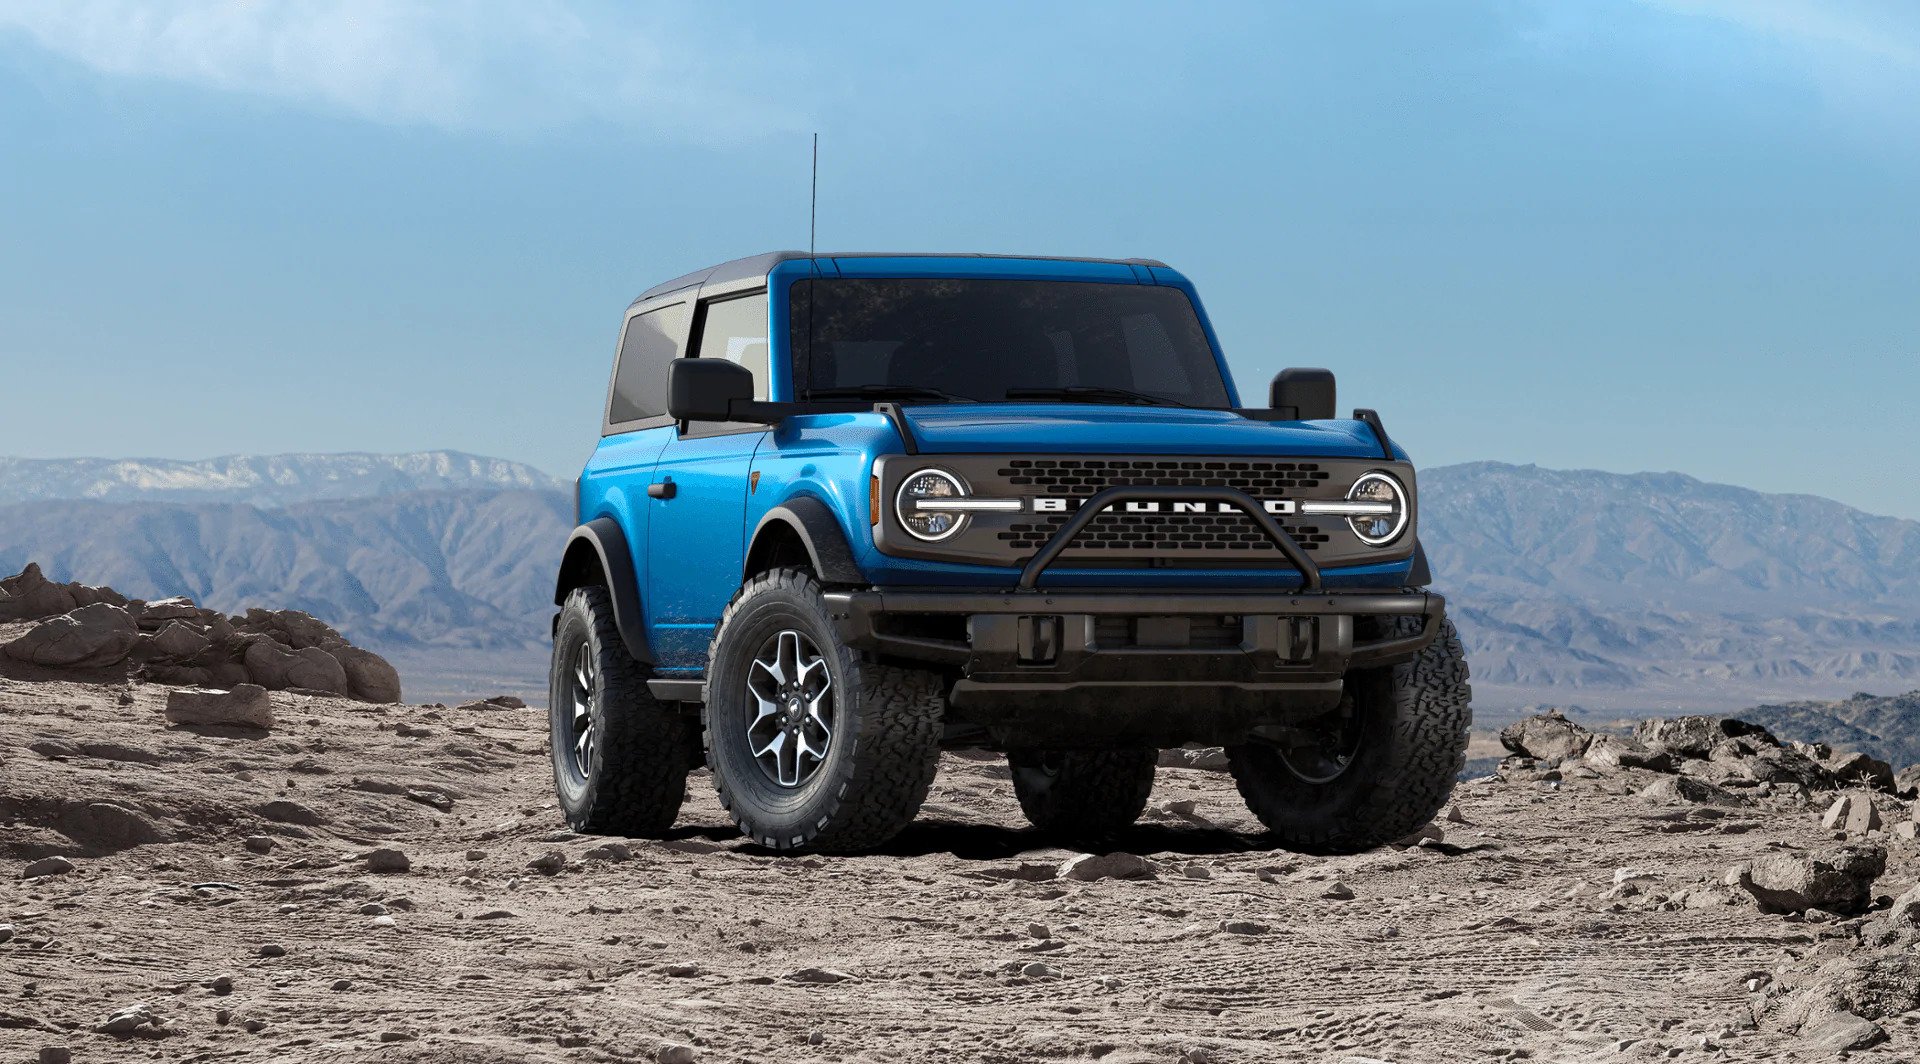 ဘယ်အပိုင်းတွေနဲ့ ဝယ်သူတွေက 125.000 2021 Ford Bronco အမှာစာတွေကို စိတ်ကြိုက်လုပ်နေကြလဲ။